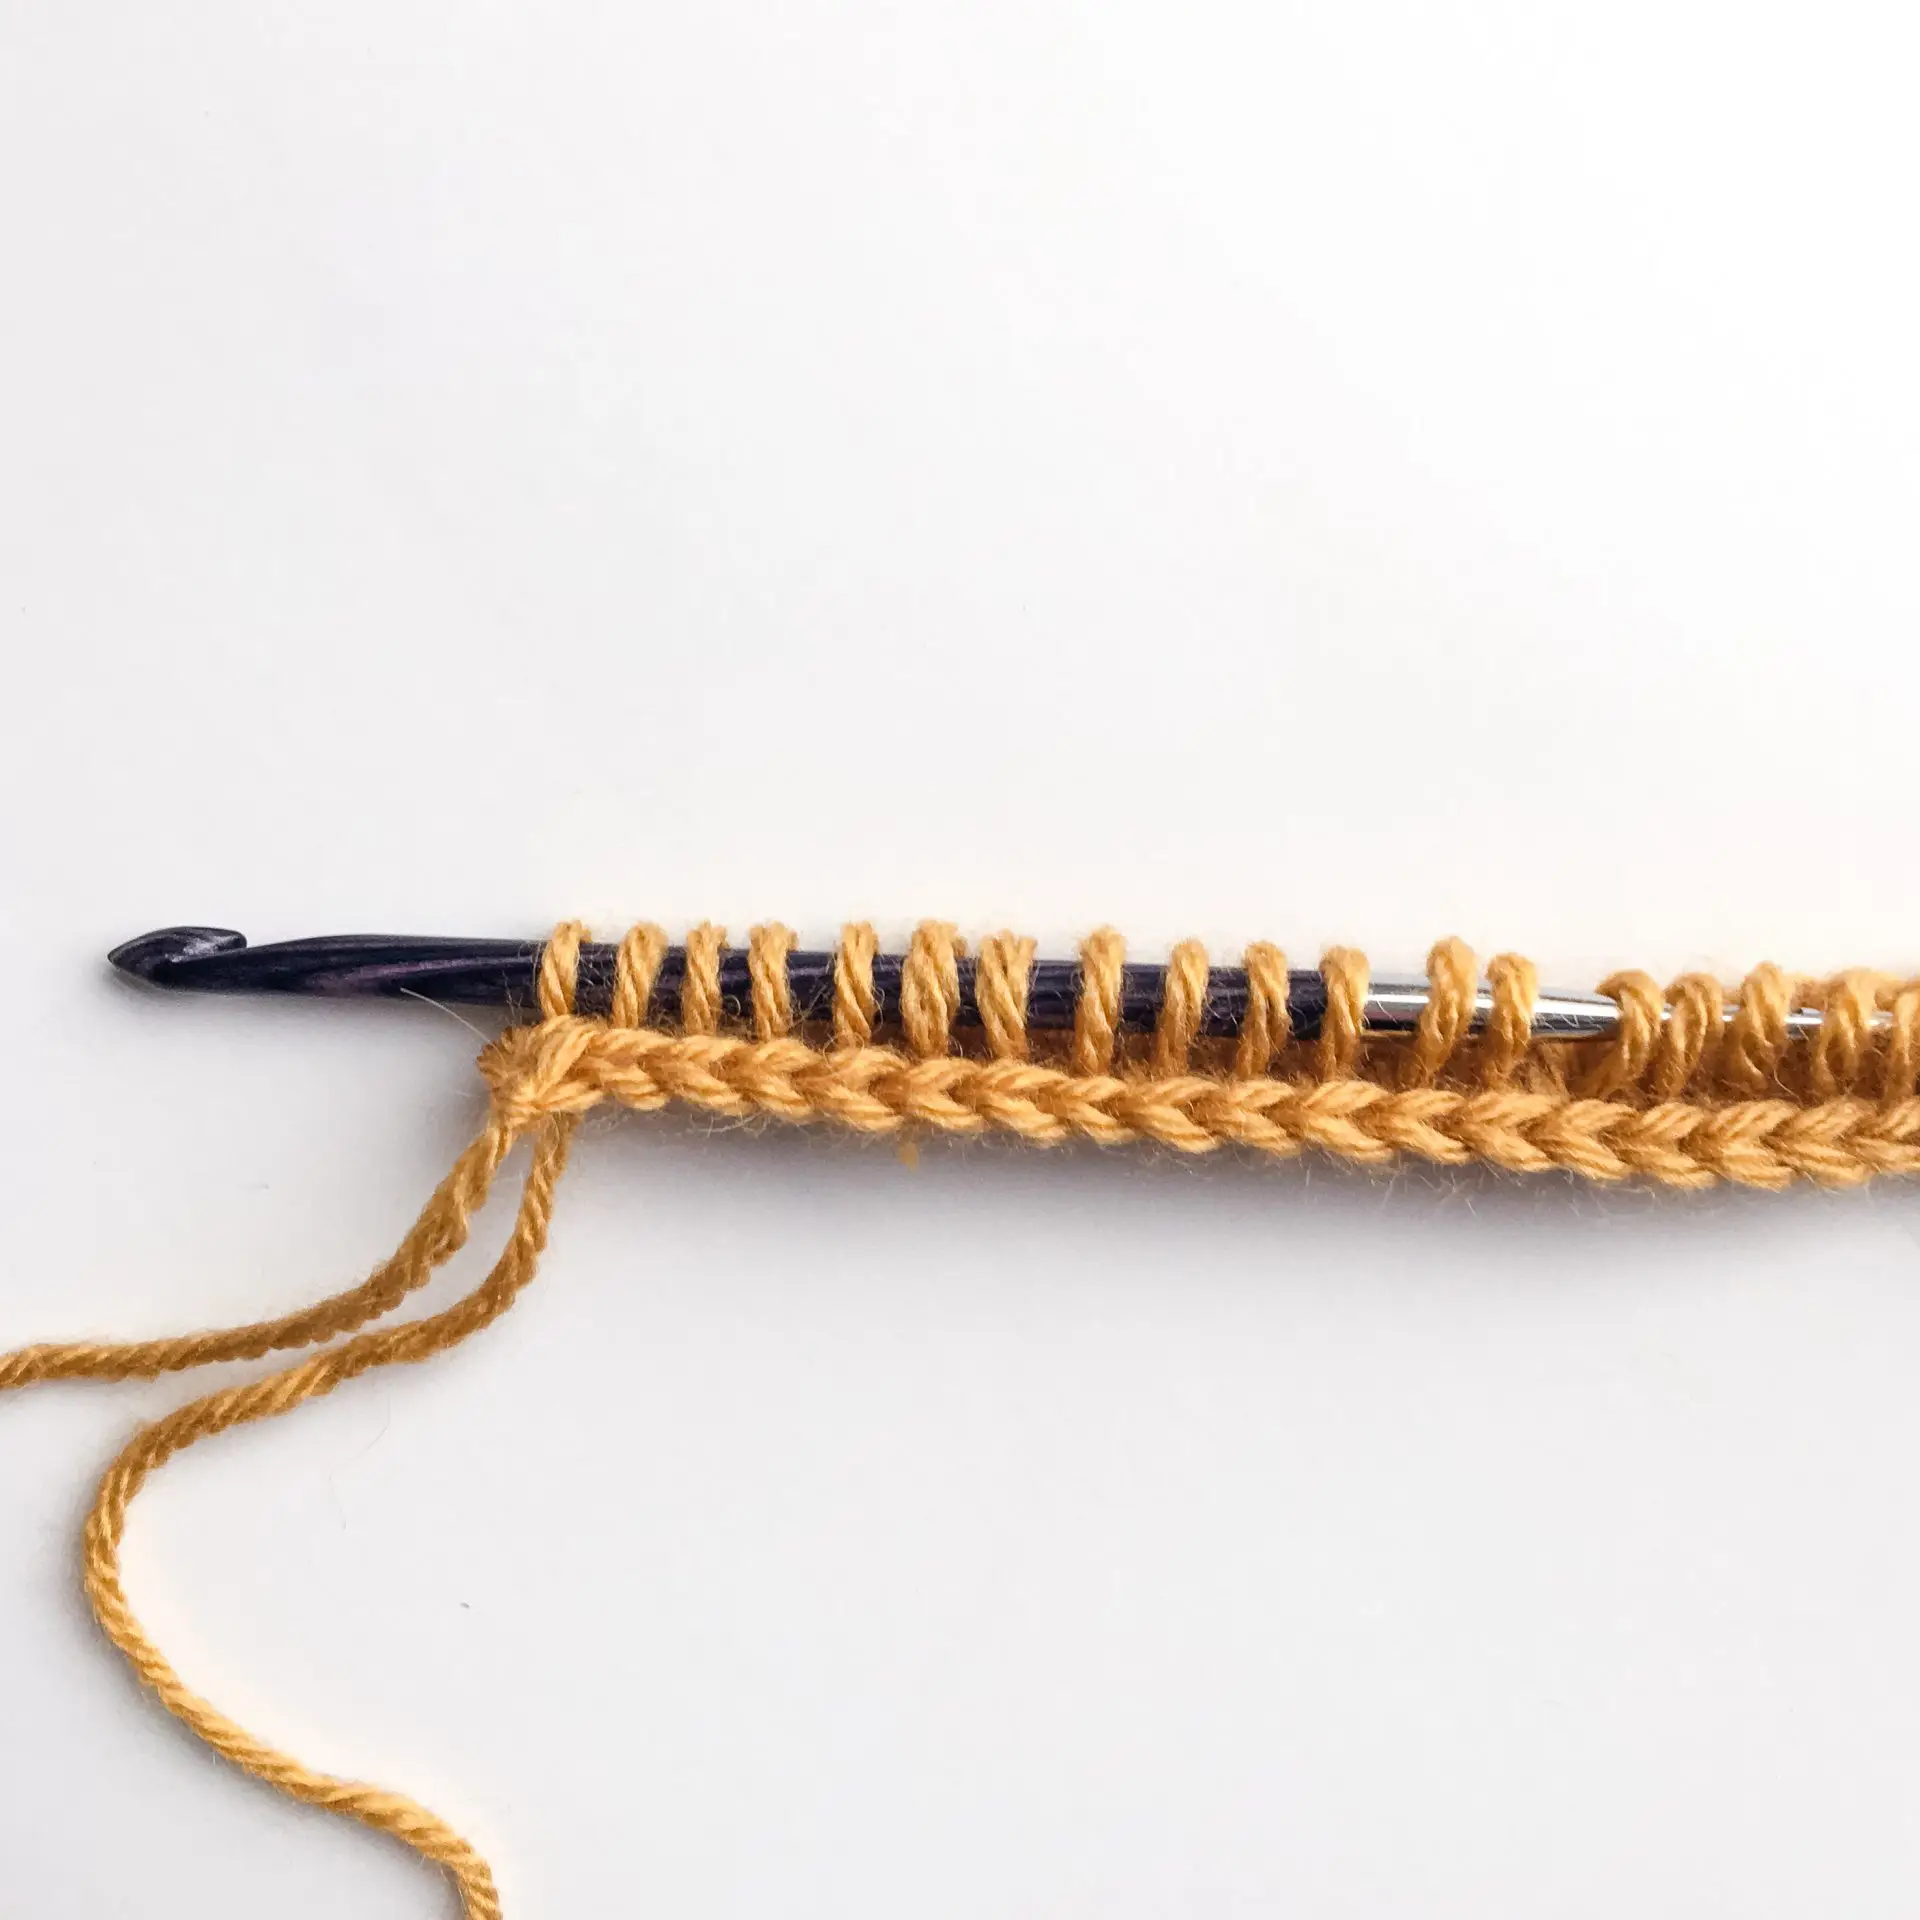 Tunisian Crochet Knit Stitch Process 7